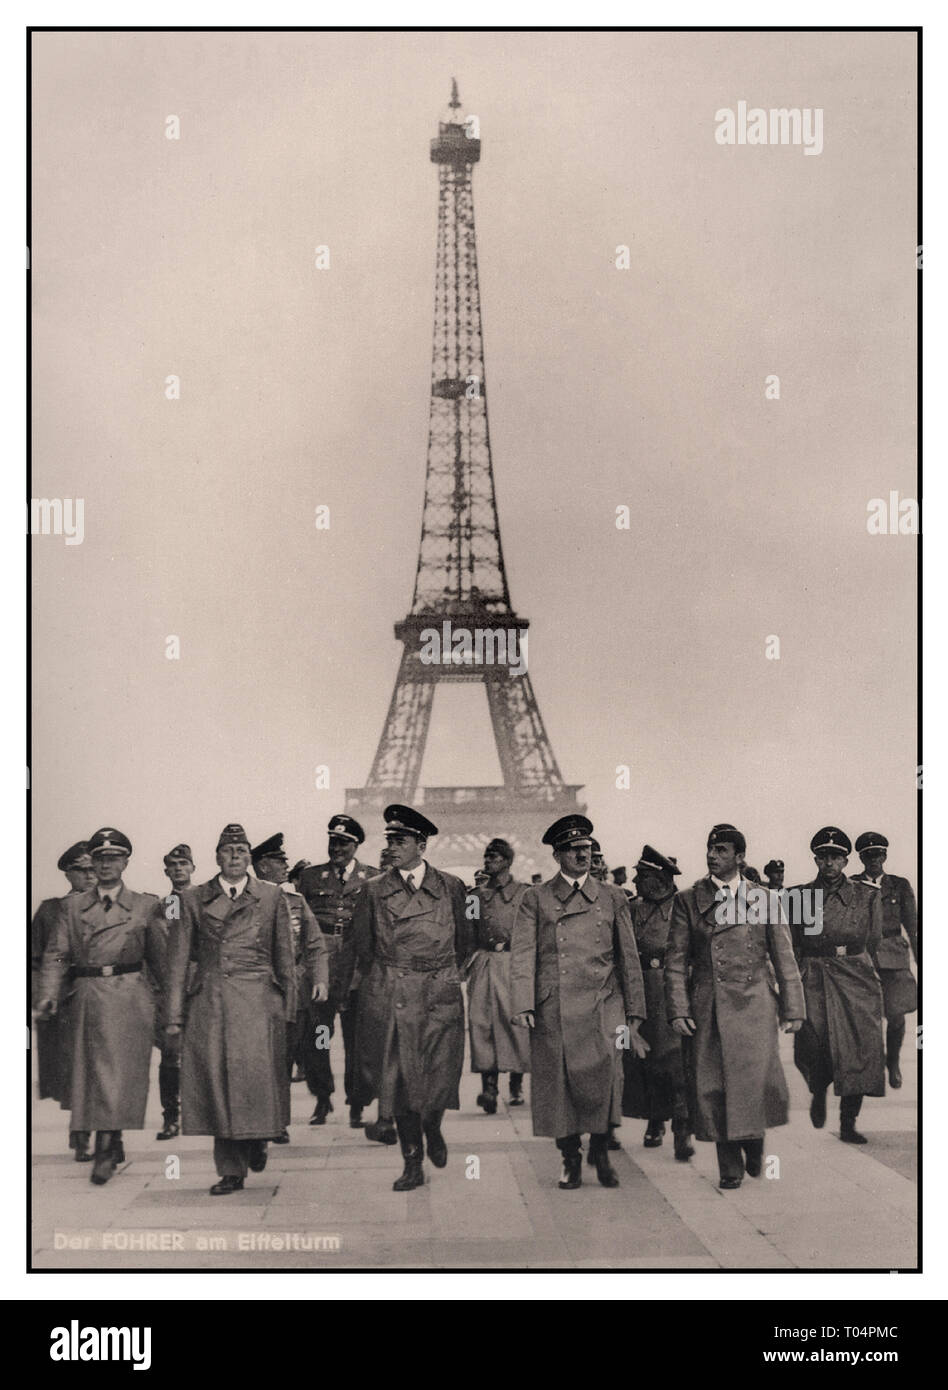 HITLER Eiffelturm PARIS Adolf Hitler mit seiner Gruppe hochrangiger Nazi-deutscher Militäroffiziere, darunter der Industriestratege Albert Speer auf seiner rechten Seite, im besetzten Paris mit dem Eiffelturm im Hintergrund. Ein ikonisches, sorgfältig arrangierte Nazi-Propagandabild mit deutscher Bildunterschrift über die Besetzung Nazi-Deutschlands im 2. Juli 1940 in Frankreich Stockfoto